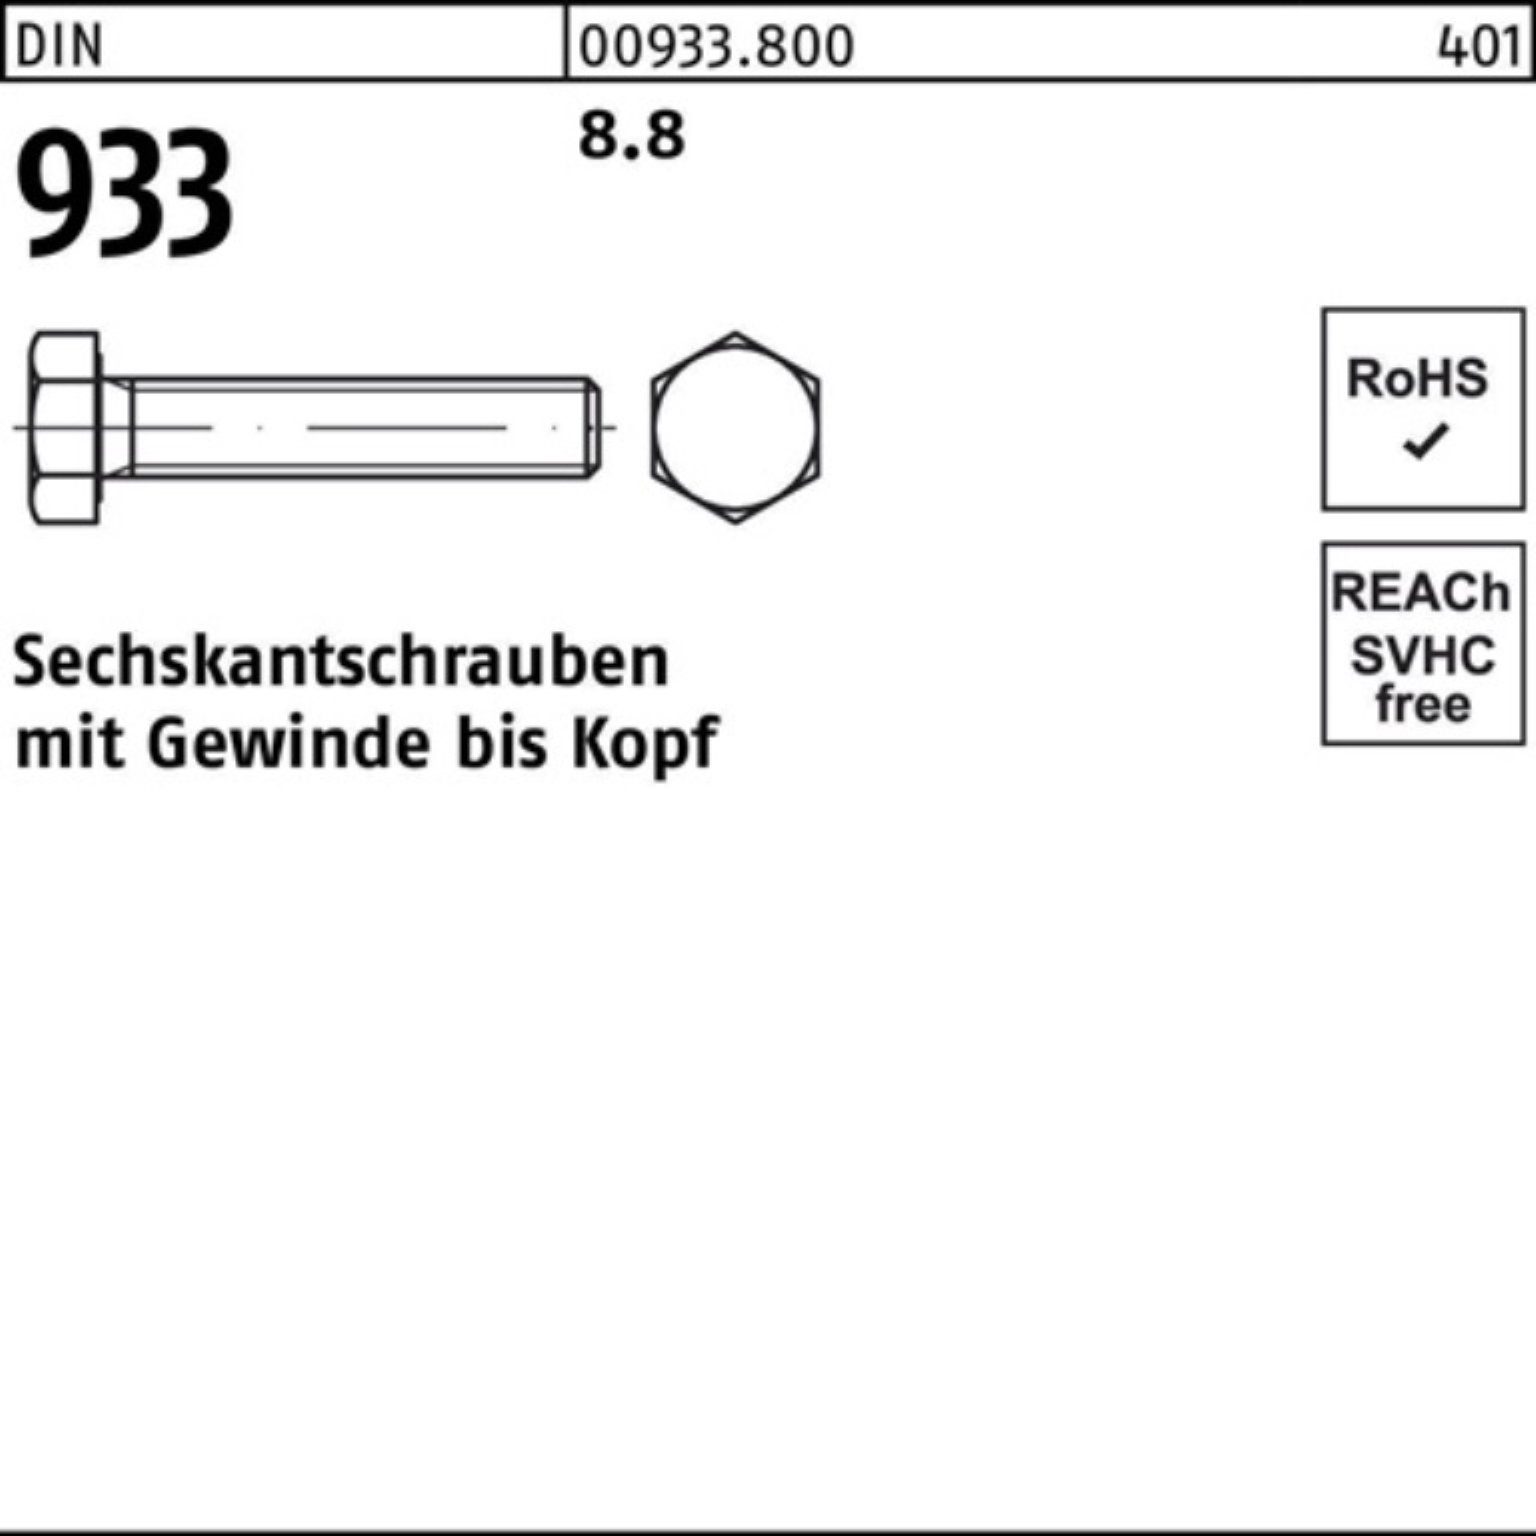 Pack Sechskantschraube 933 25 8.8 Reyher Stück VG DIN 80 DIN Sechskantschraube M20x 933 100er